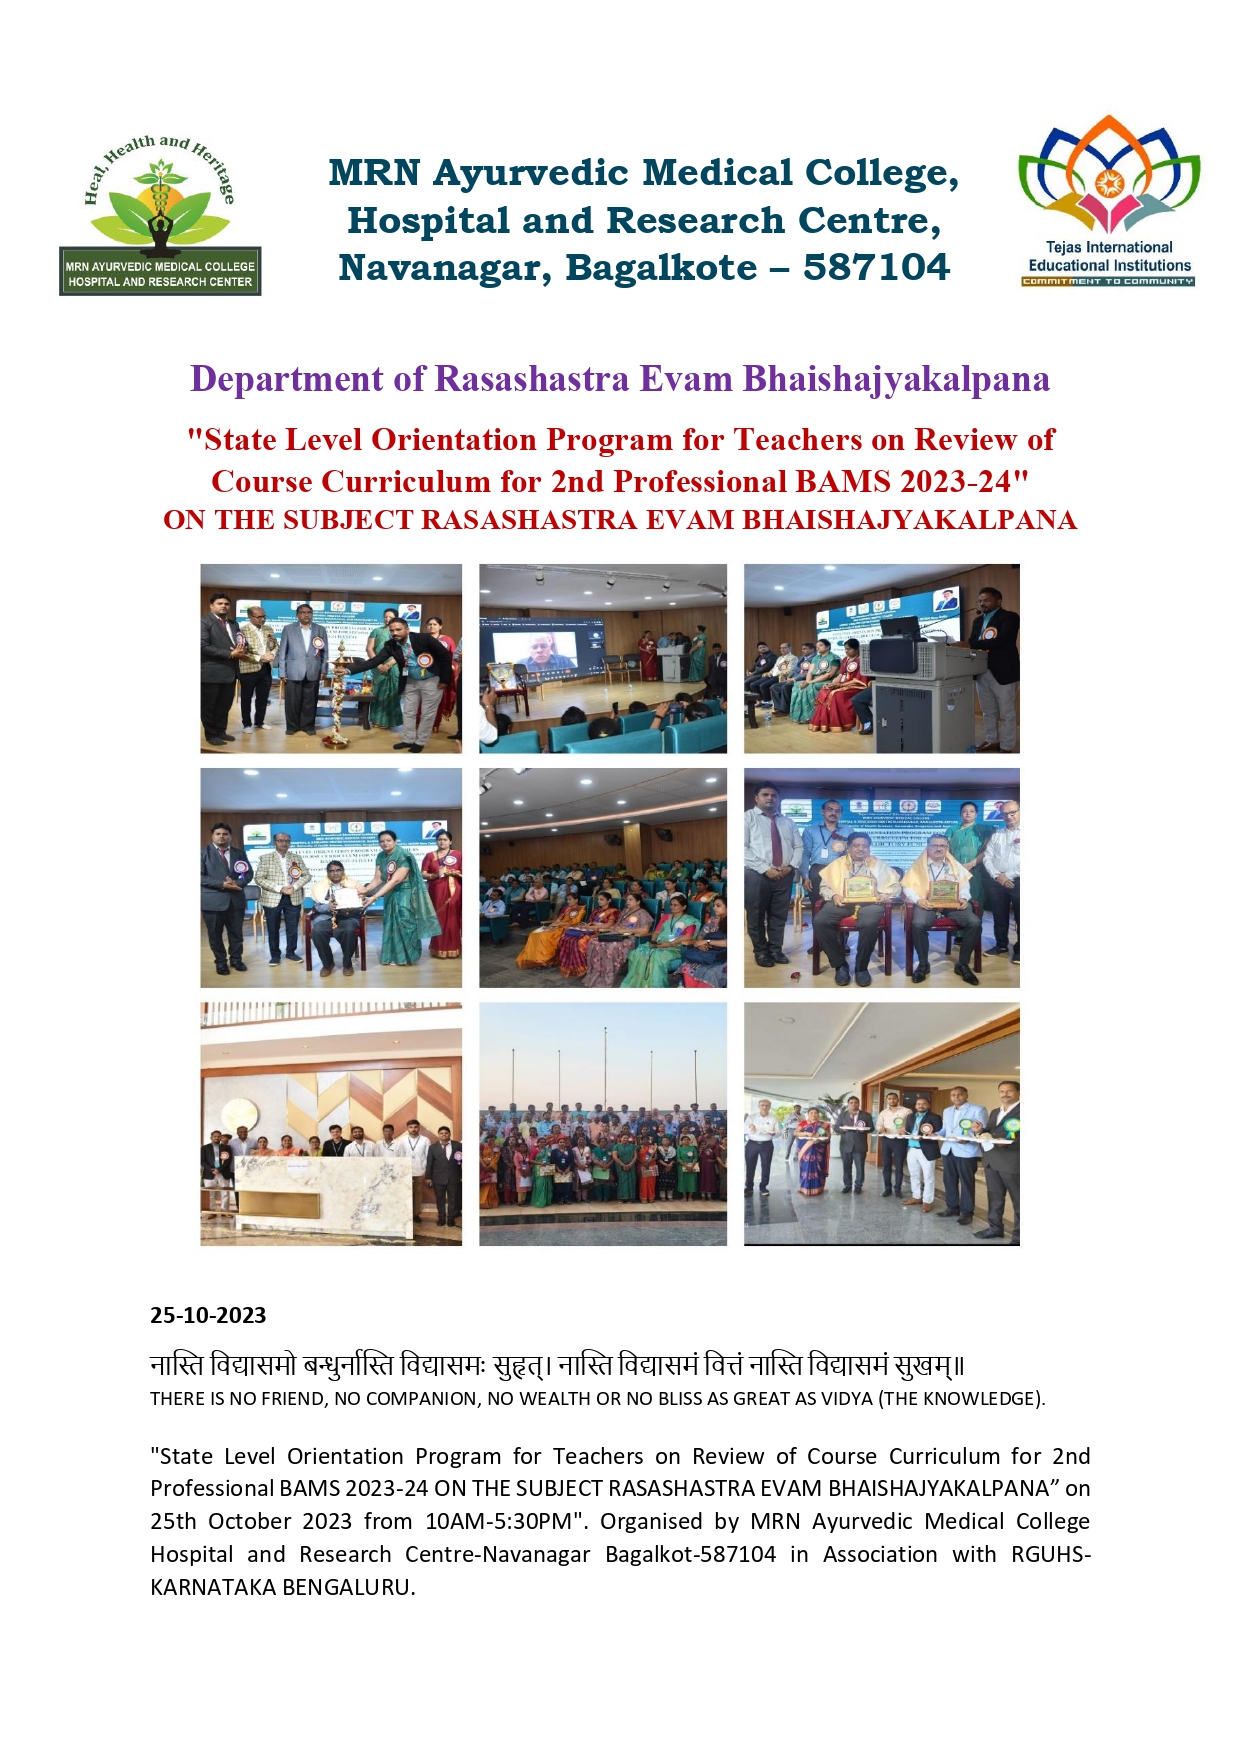 State Level Orientation Program for Teachers – RSBK 25-10-2023